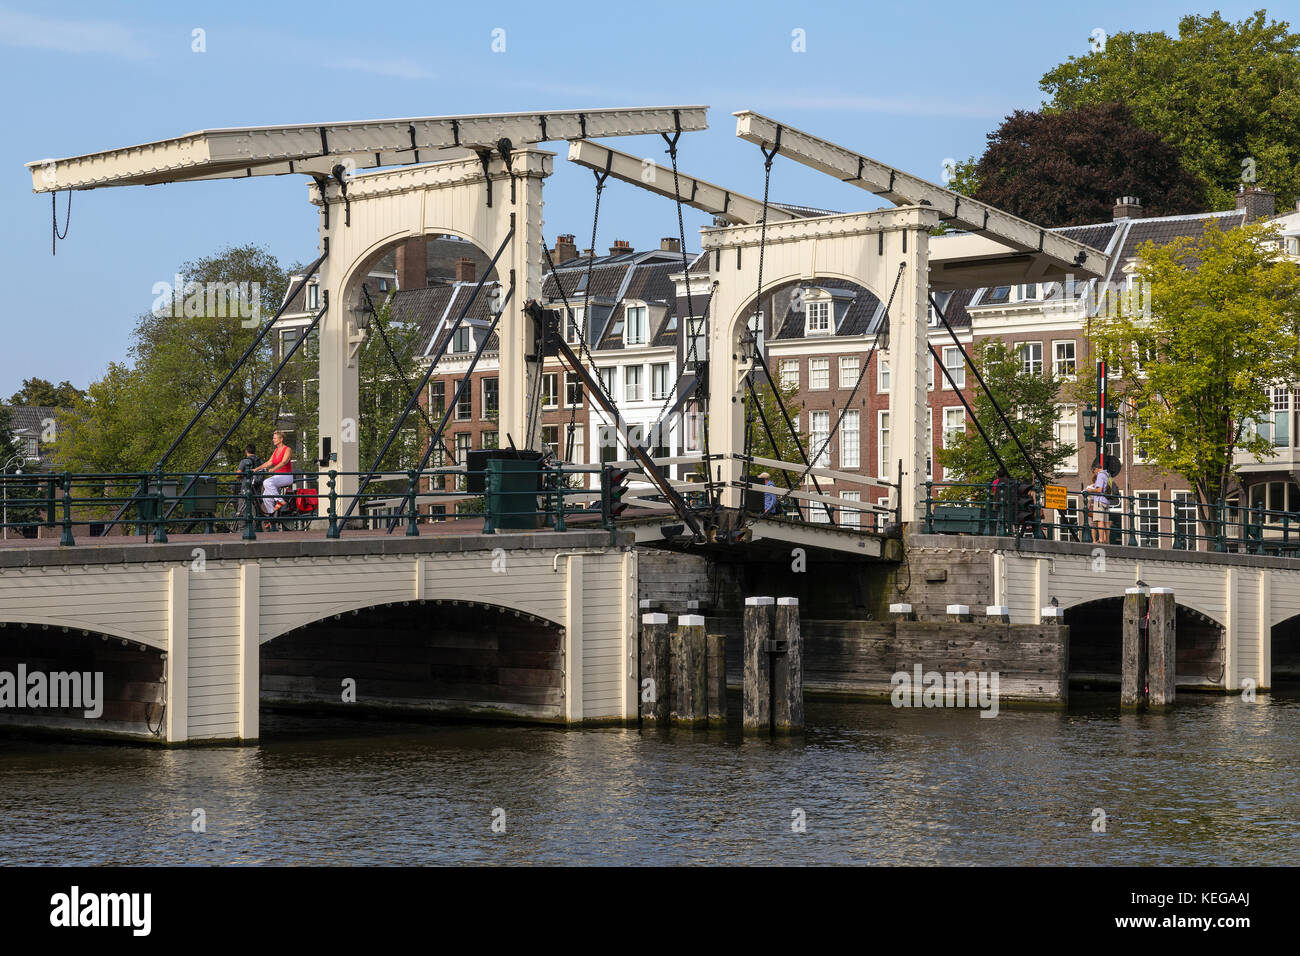 Le pont magere ou skinny bridge sur la rivière Amstel dans la ville d'Amsterdam aux Pays-Bas. la partie centrale de Magere Brug est un b.sc.a. Banque D'Images